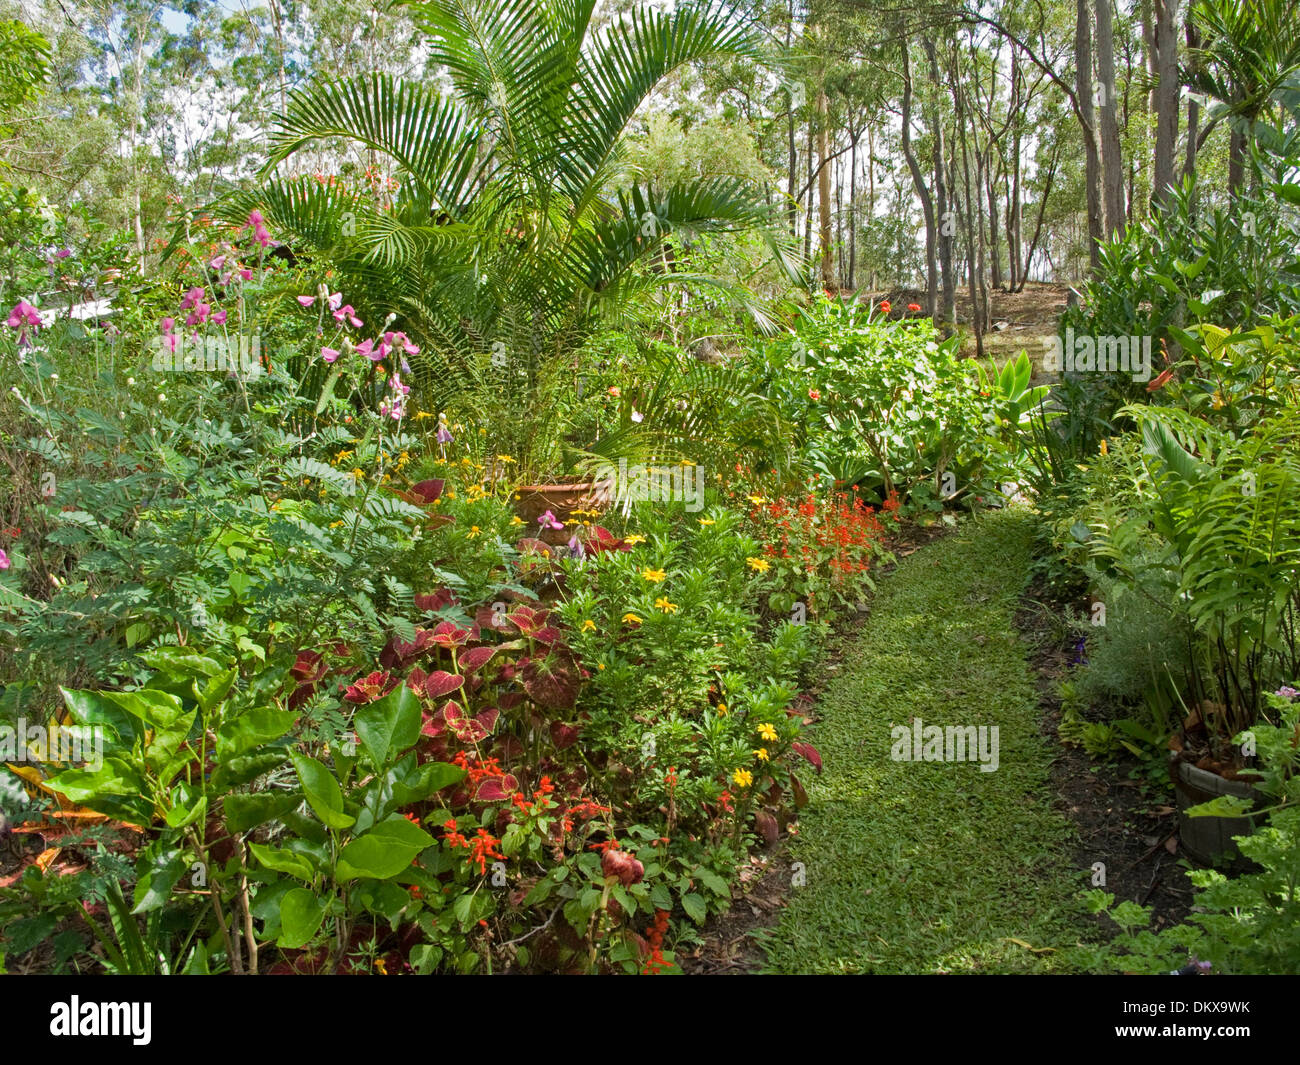 Spettacolare sub-tropicale giardino cottage con fogliame color smeraldo e colorati di arbusti fioriti, le piante perenni e prato sotto le palme Foto Stock